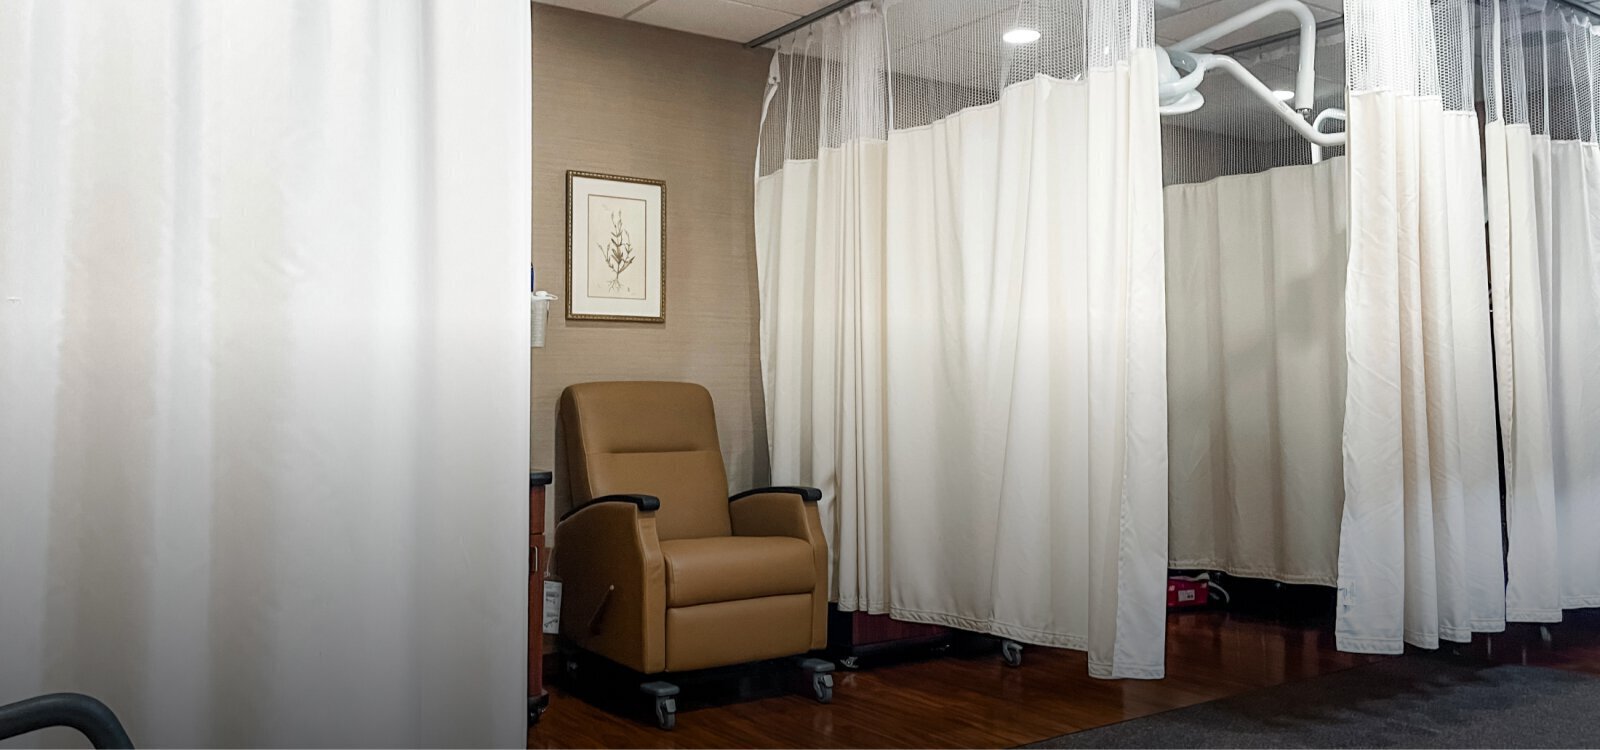 Marotta Hair Restoration patient room